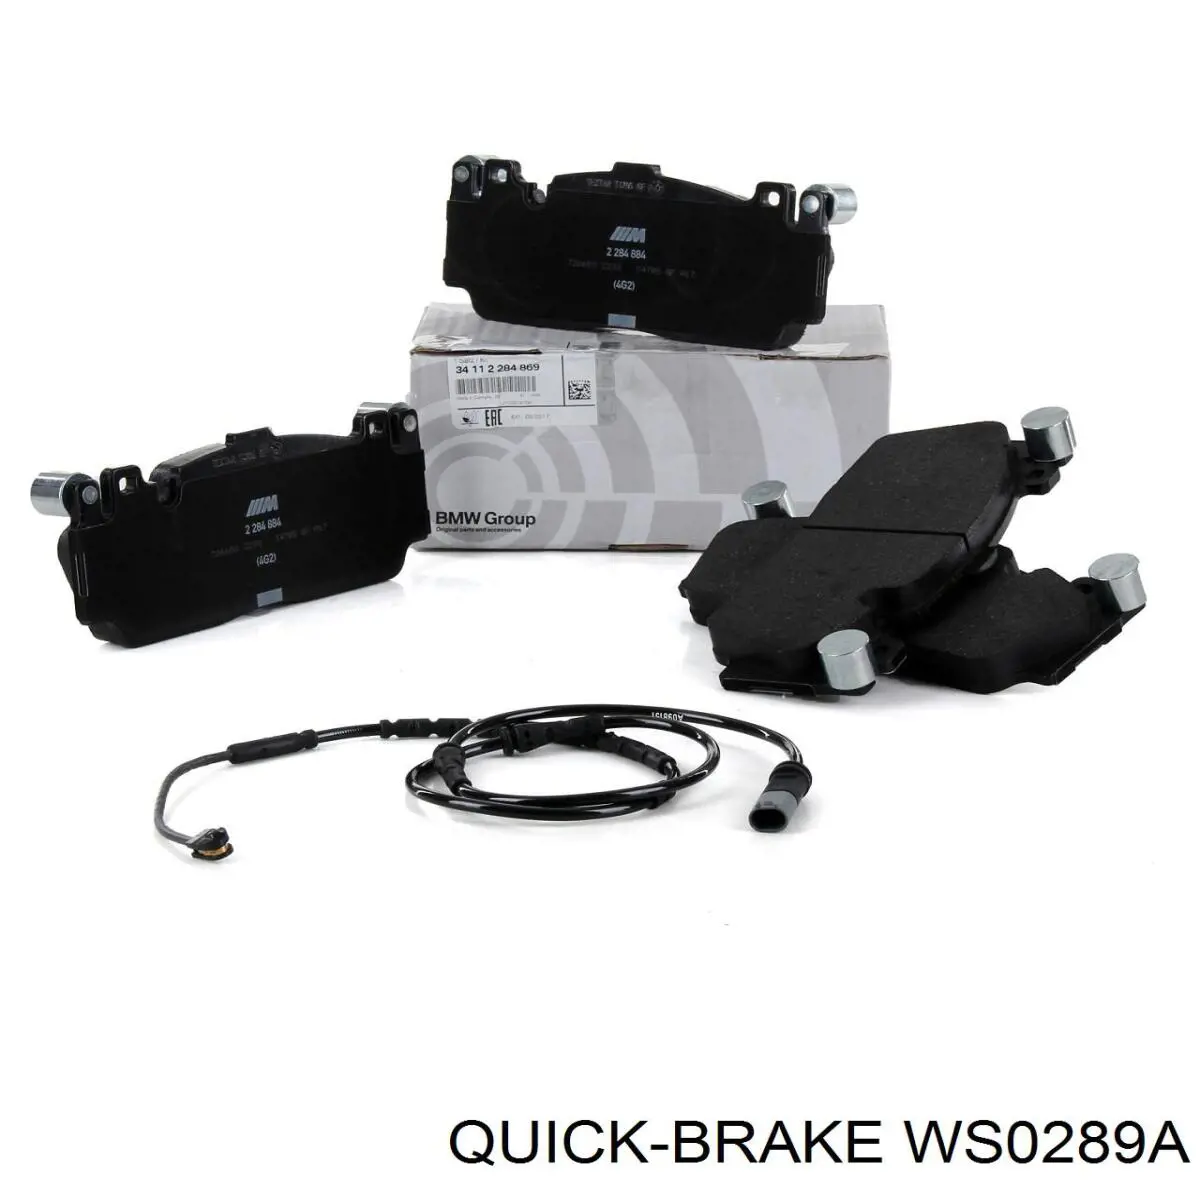 WS0289A Quick Brake contacto de aviso, desgaste de los frenos